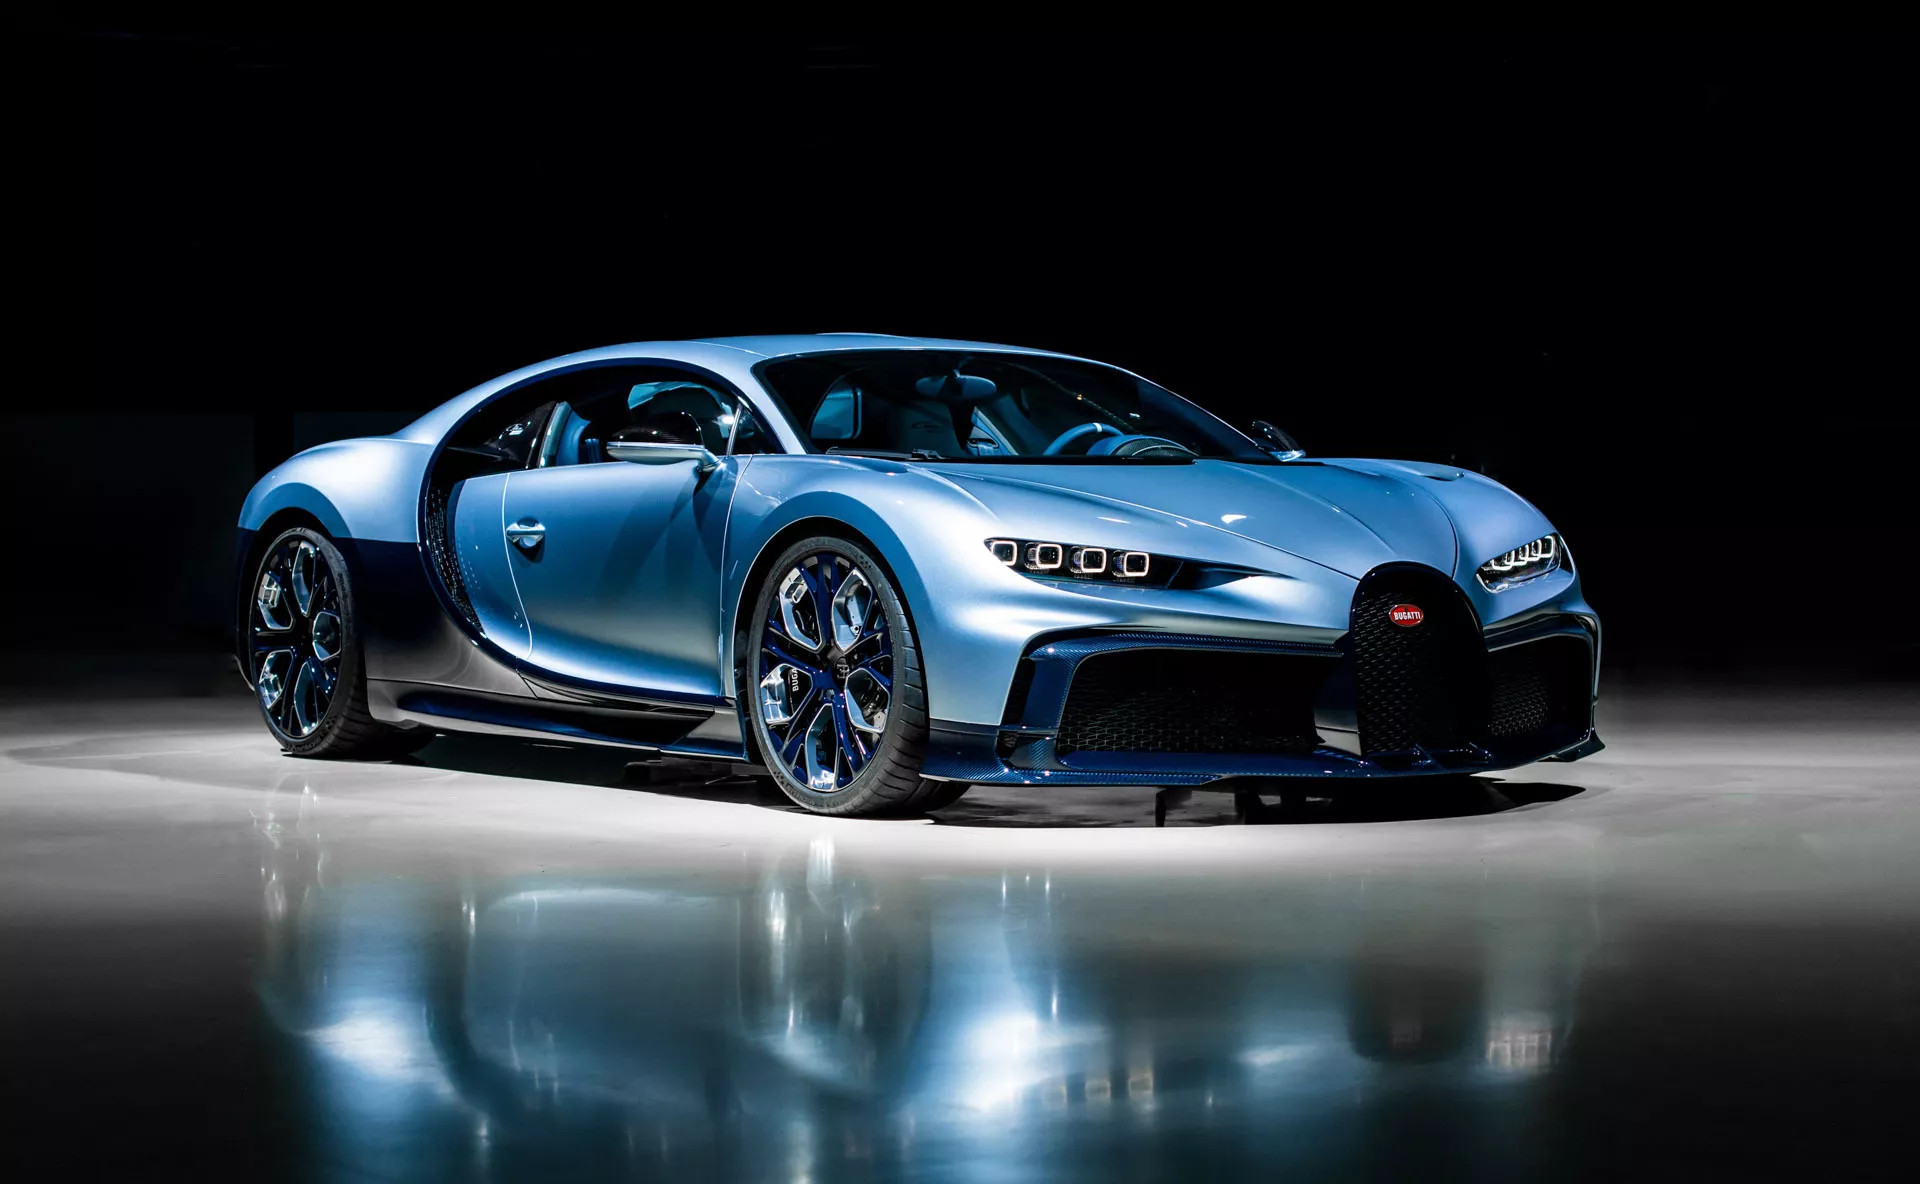 Siêu phẩm Bugatti Chiron Profilée phiên bản giới hạn hoàn toàn mới - Ảnh 1.